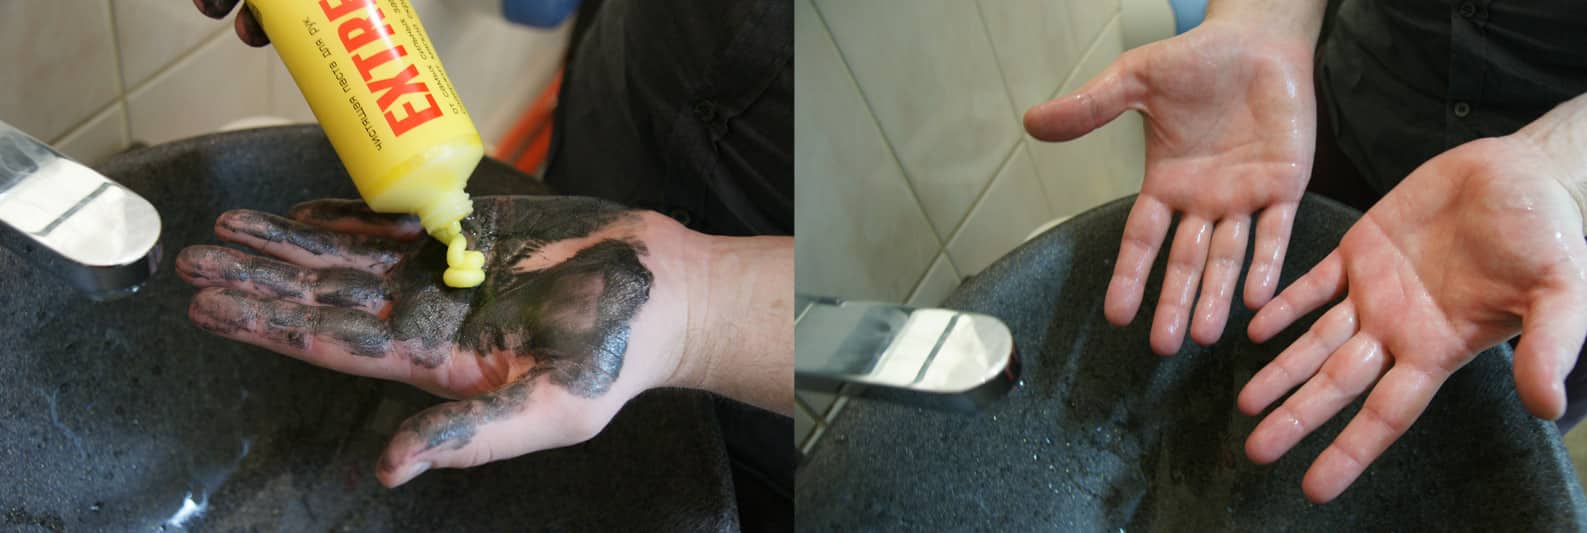 отмываем мазут с кожи рук: до и после удаления